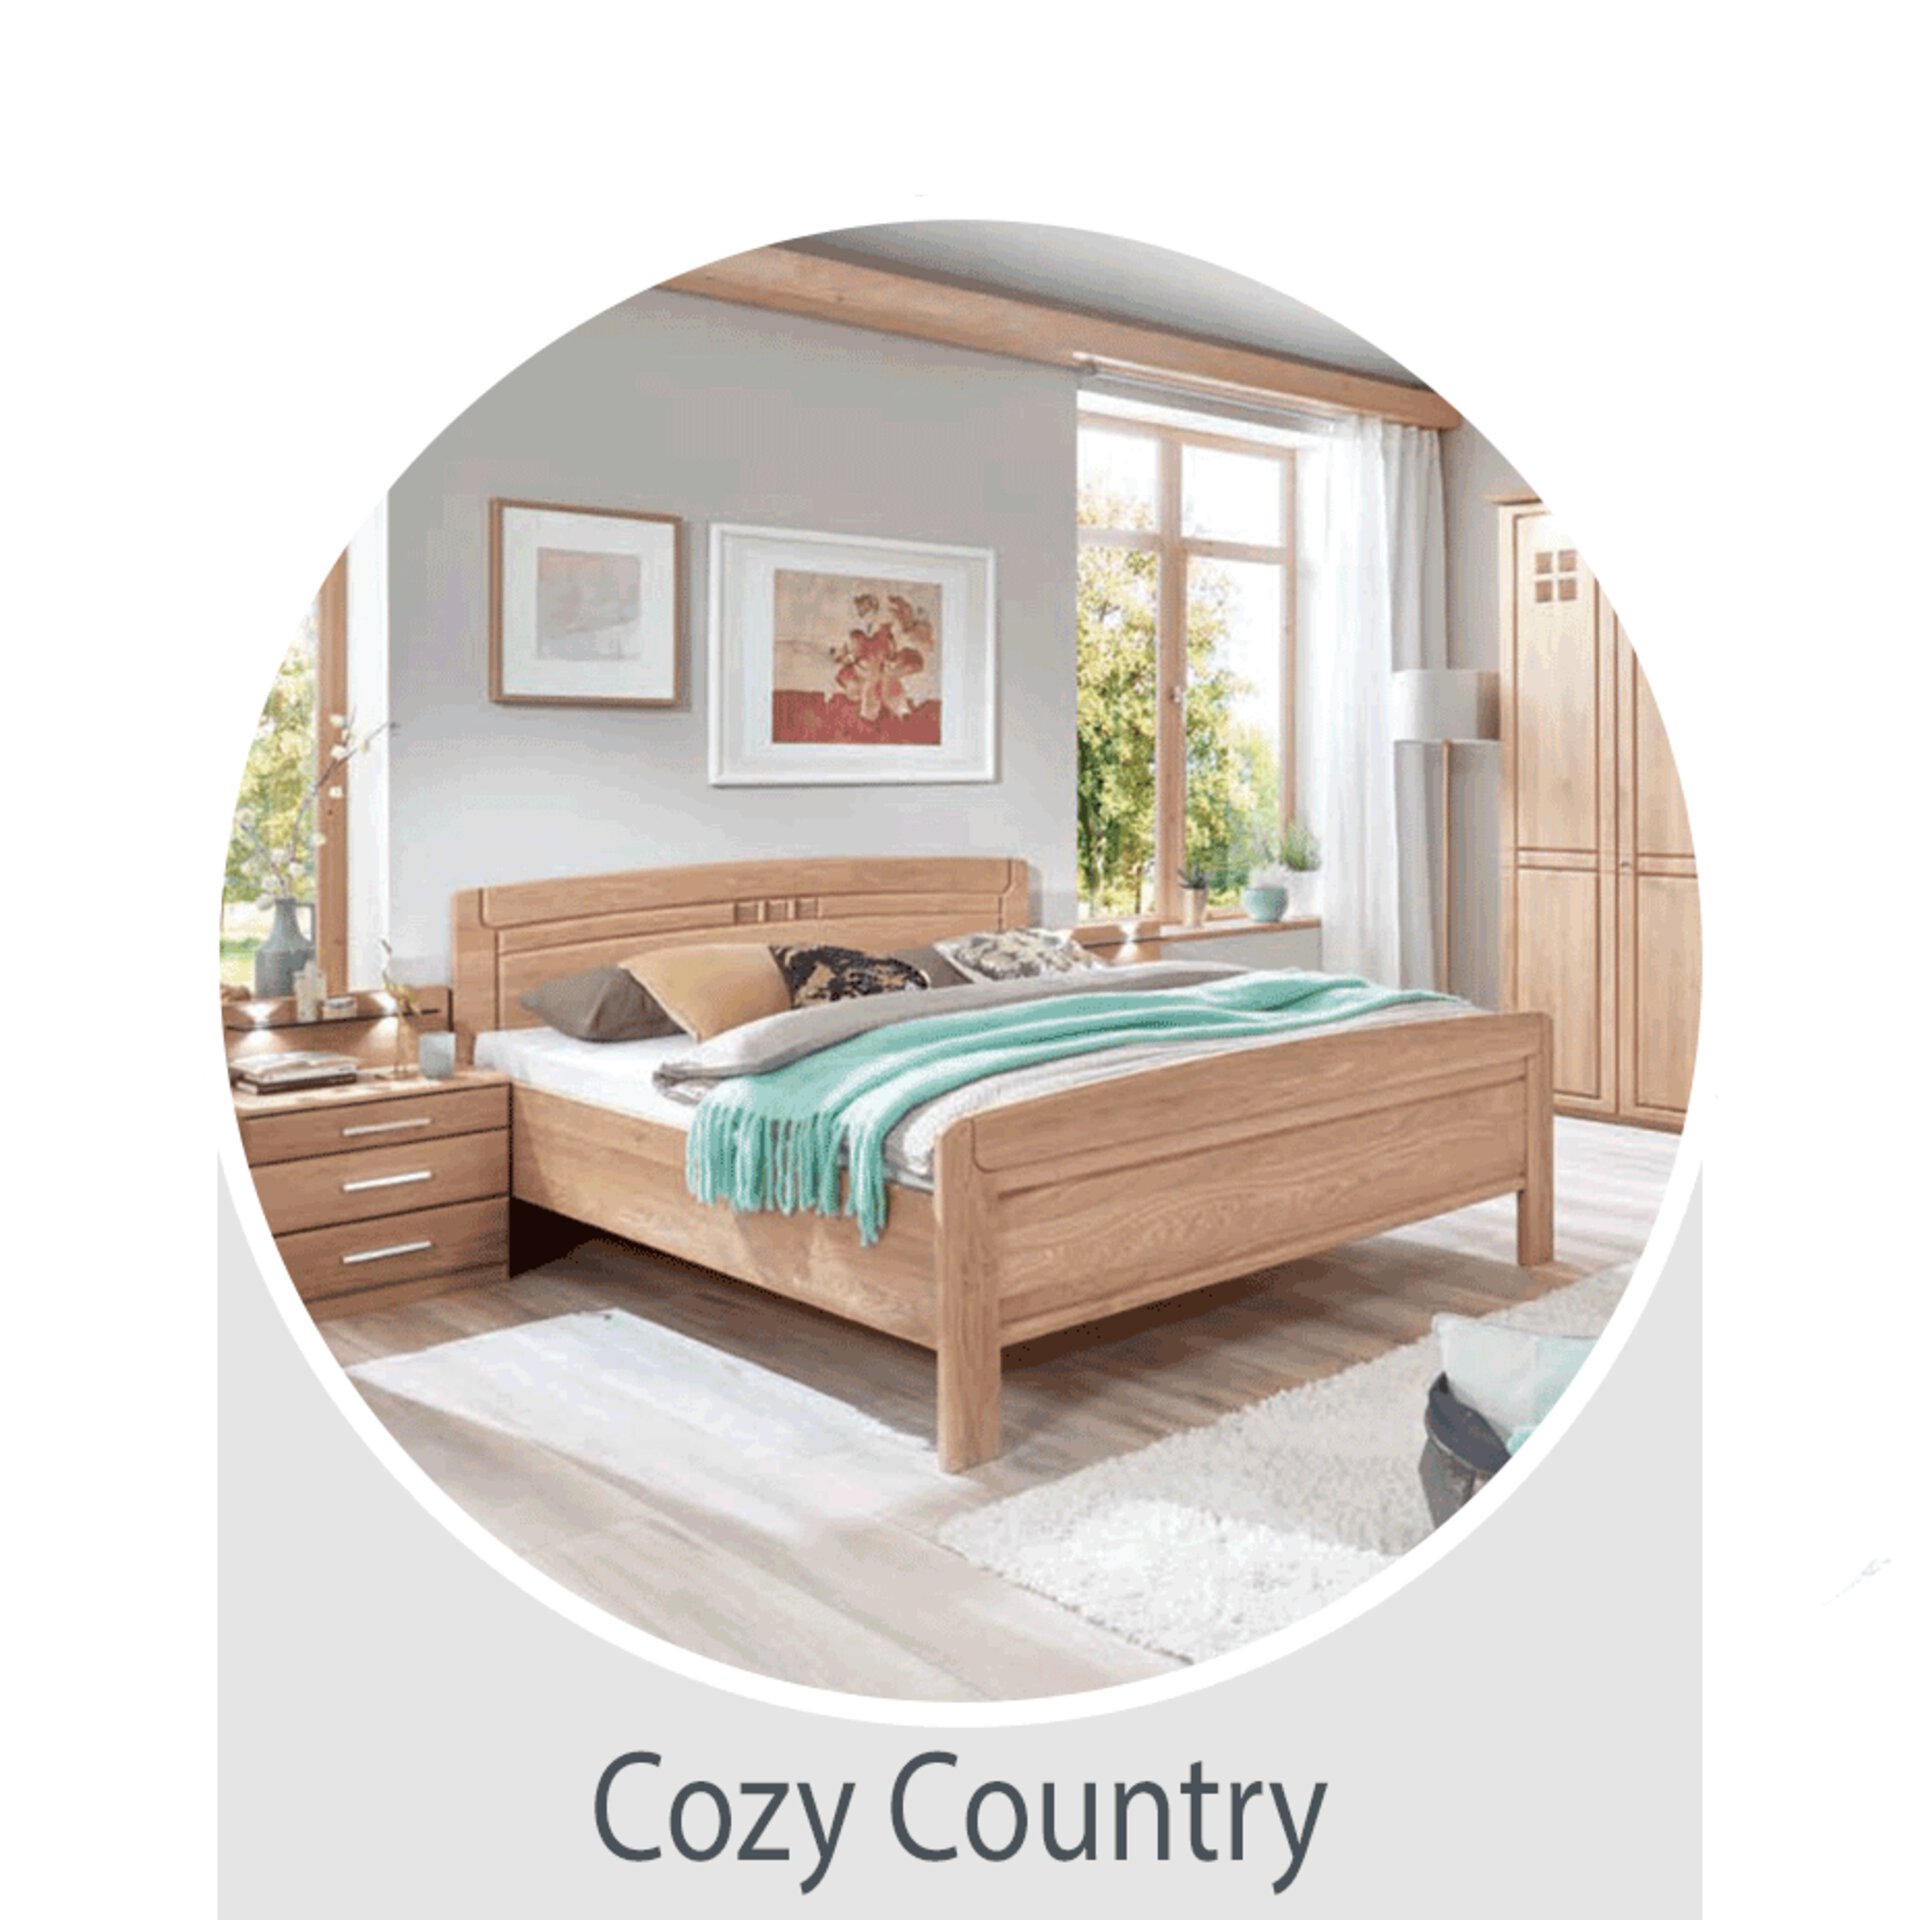 Der Wohntrend Cozy Country: Schlafen im Landhausstil - jetzt bei Möbel Inhofer entdecken und inspirieren lassen